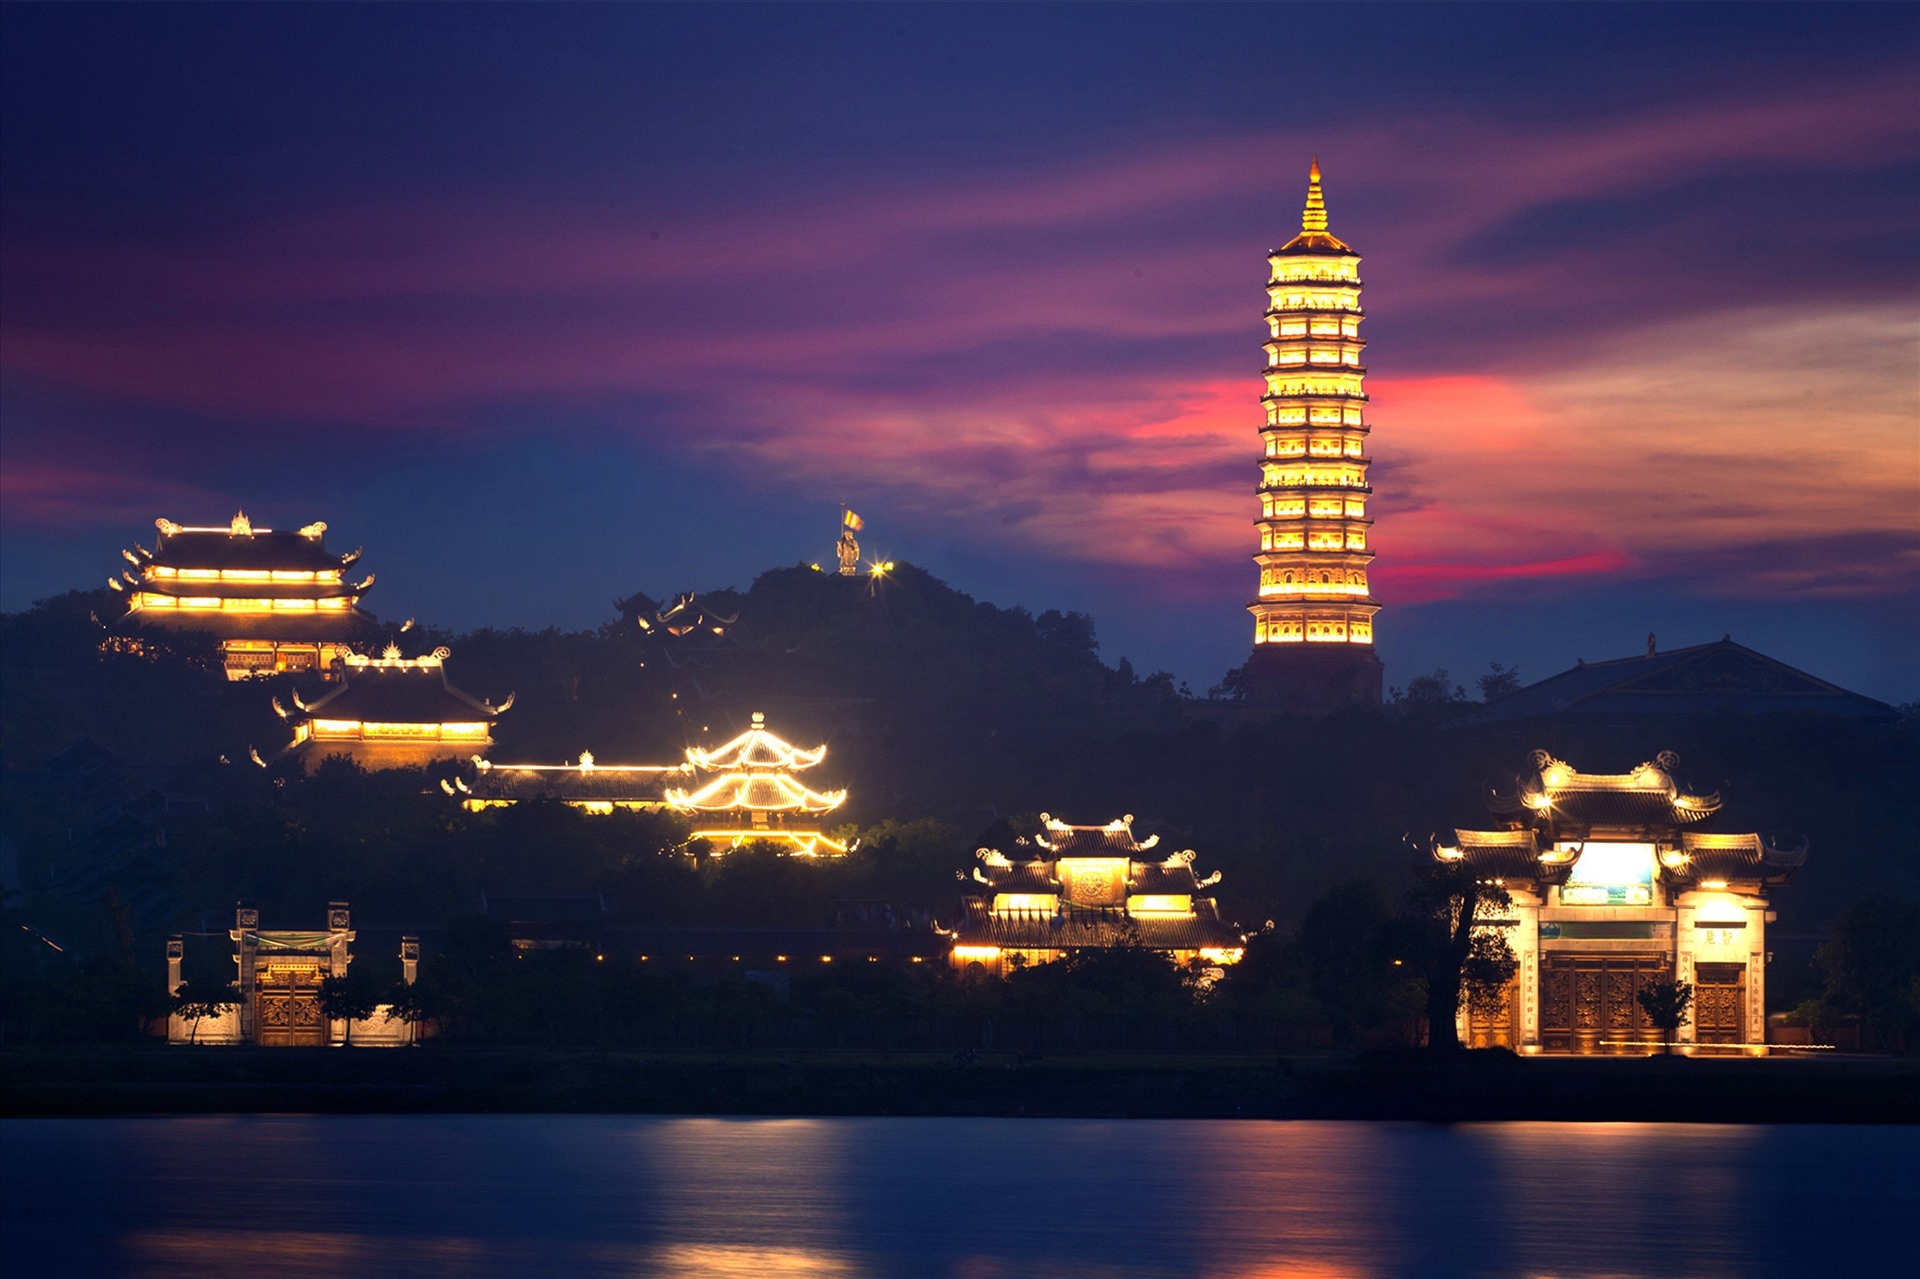 Quần thể chùa Bái Đính một trong những điểm du lịch tâm linh nổi tiếng ở Ninh Bình. Ảnh: Diệu Anh